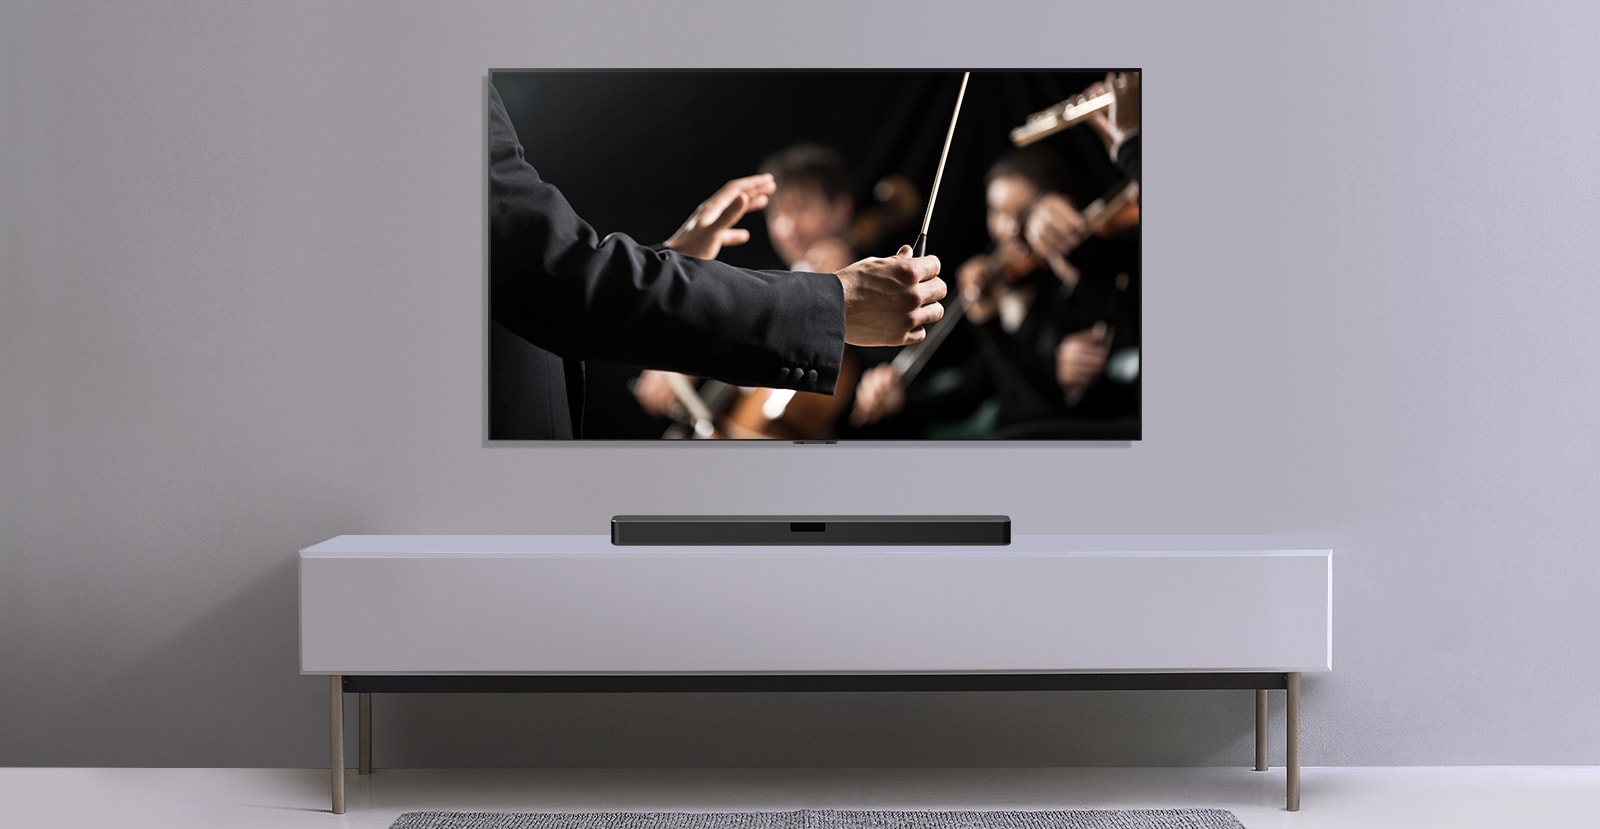 Televízor je umiestnený na sivej stene a pod ním je LG Sound Bar na sivej polici. Na obrazovke televízora je dirigent, ktorý diriguje orchester.